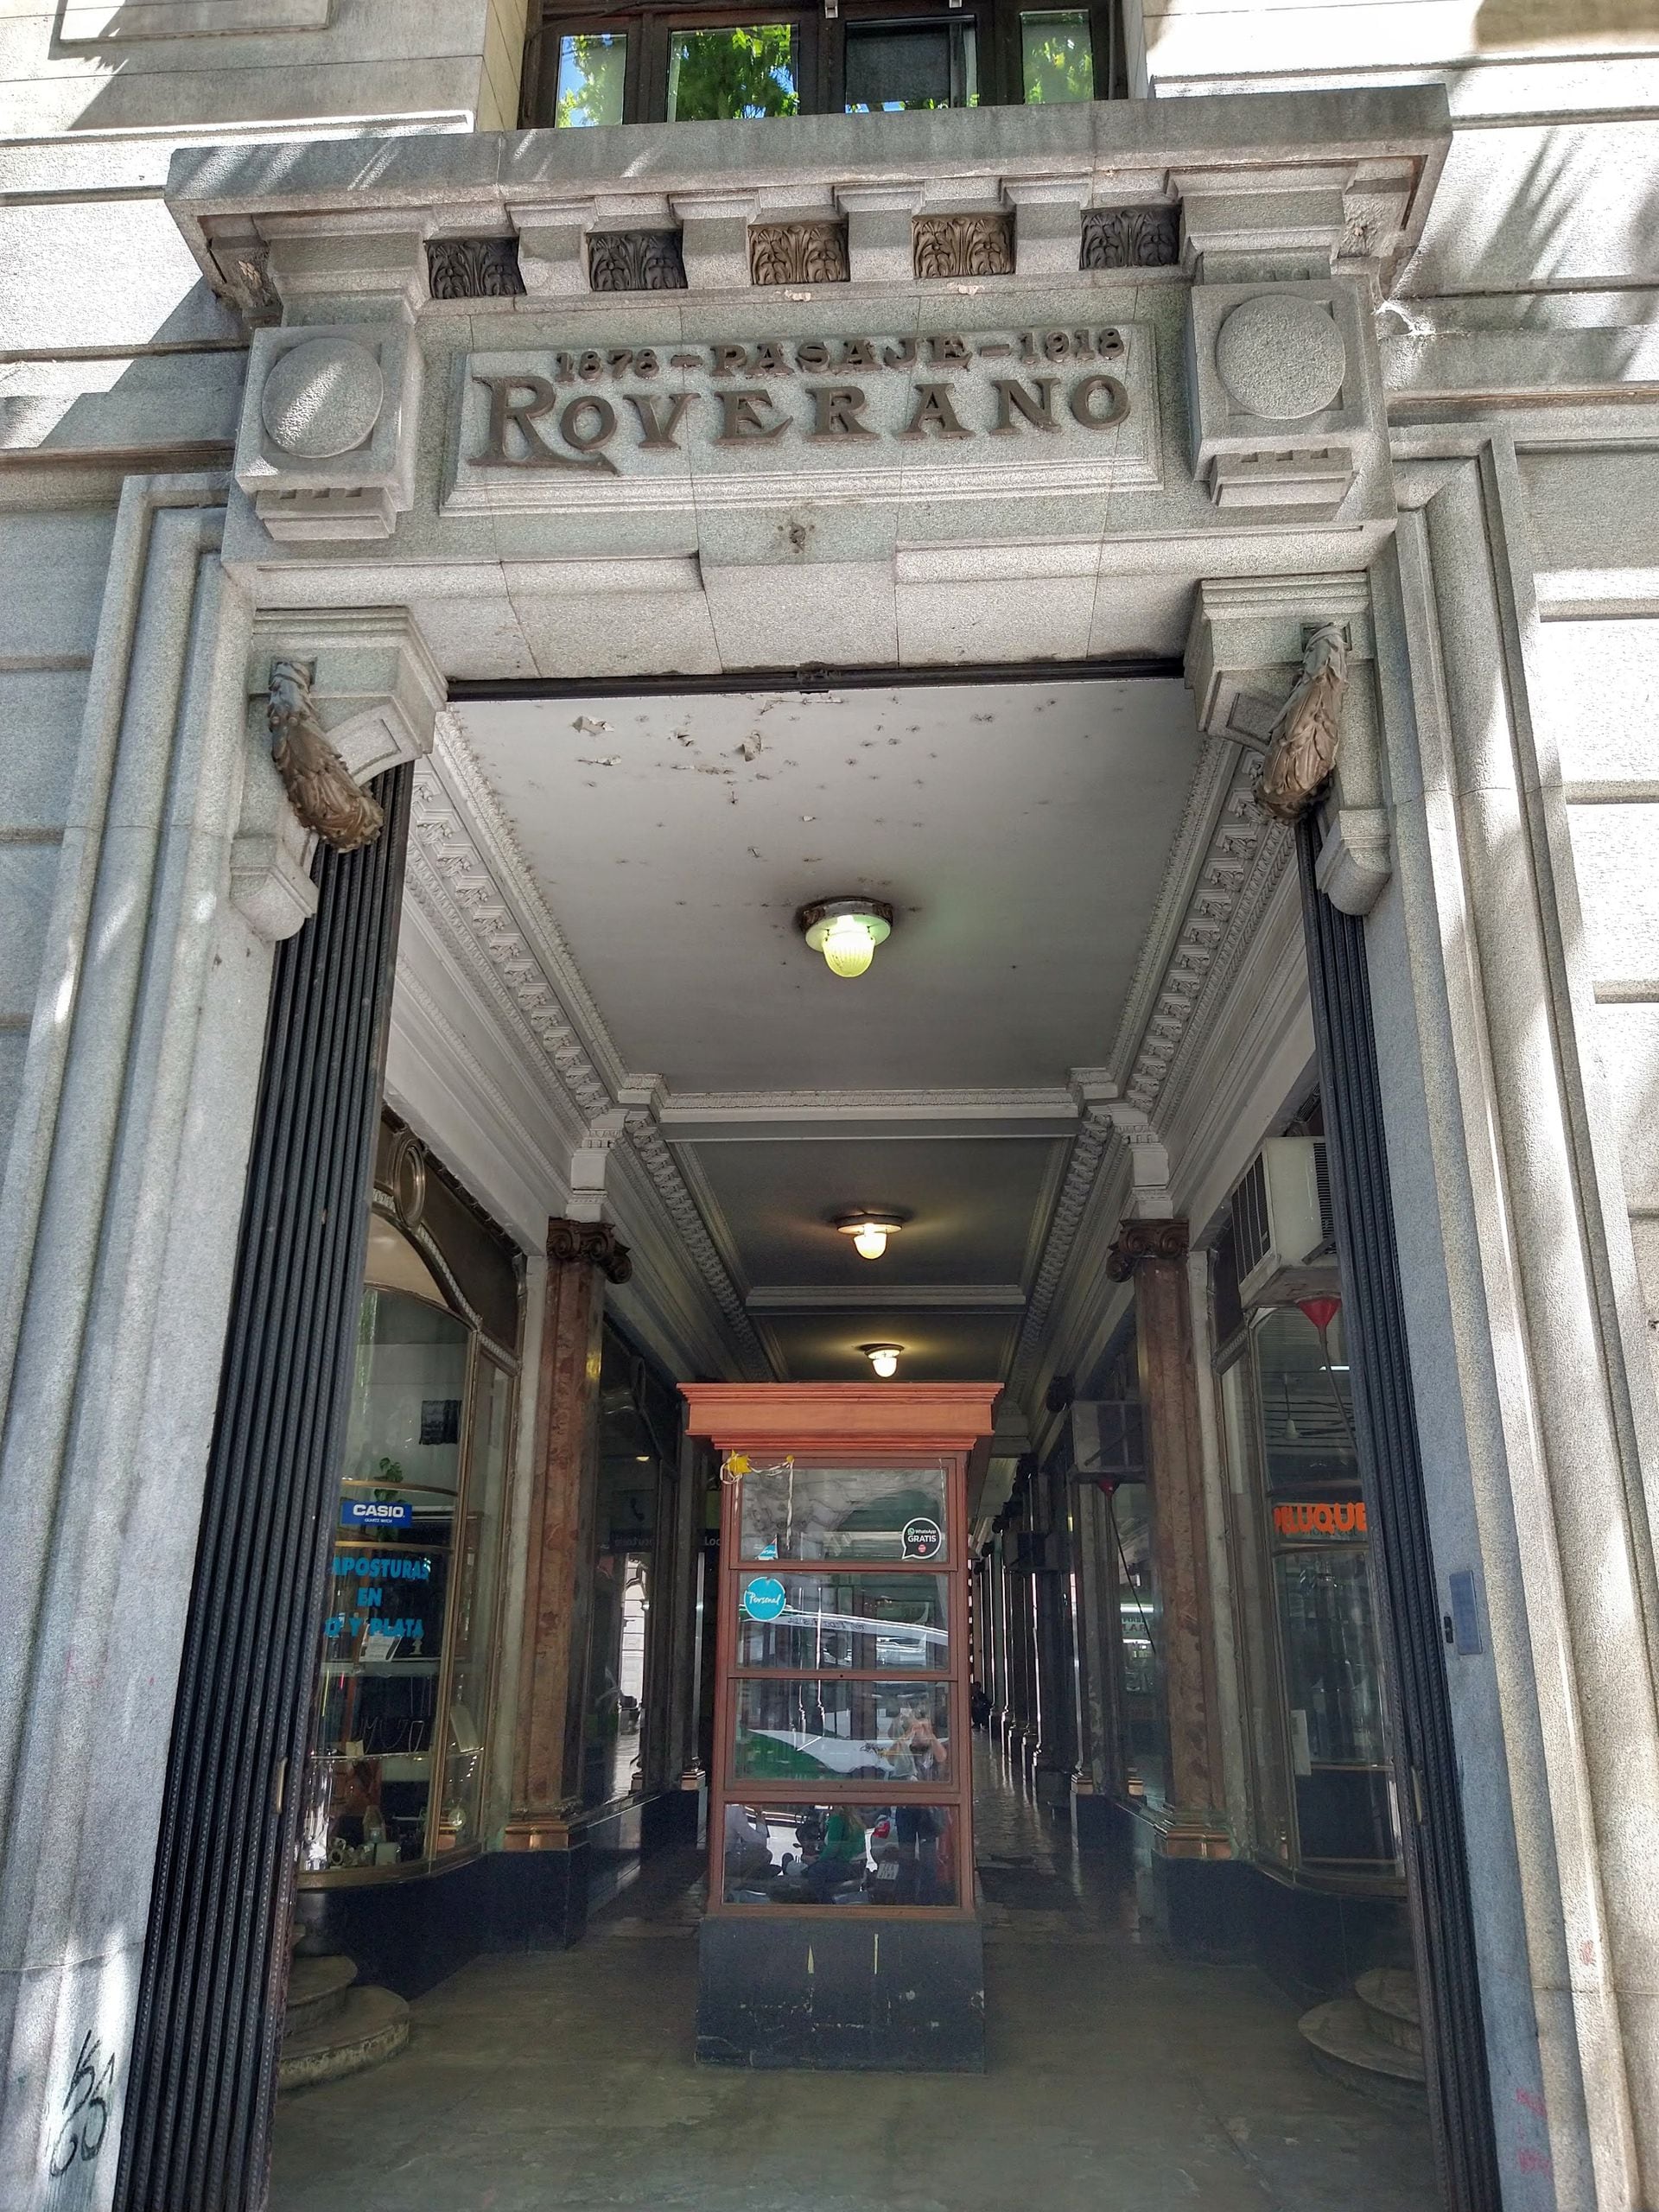 Ingreso al Pasaje Roverano desde Av. de Mayo. Se leen las dos fechas de inauguración. La del primer edificio, en 1878 y la del segundo, en 1918.